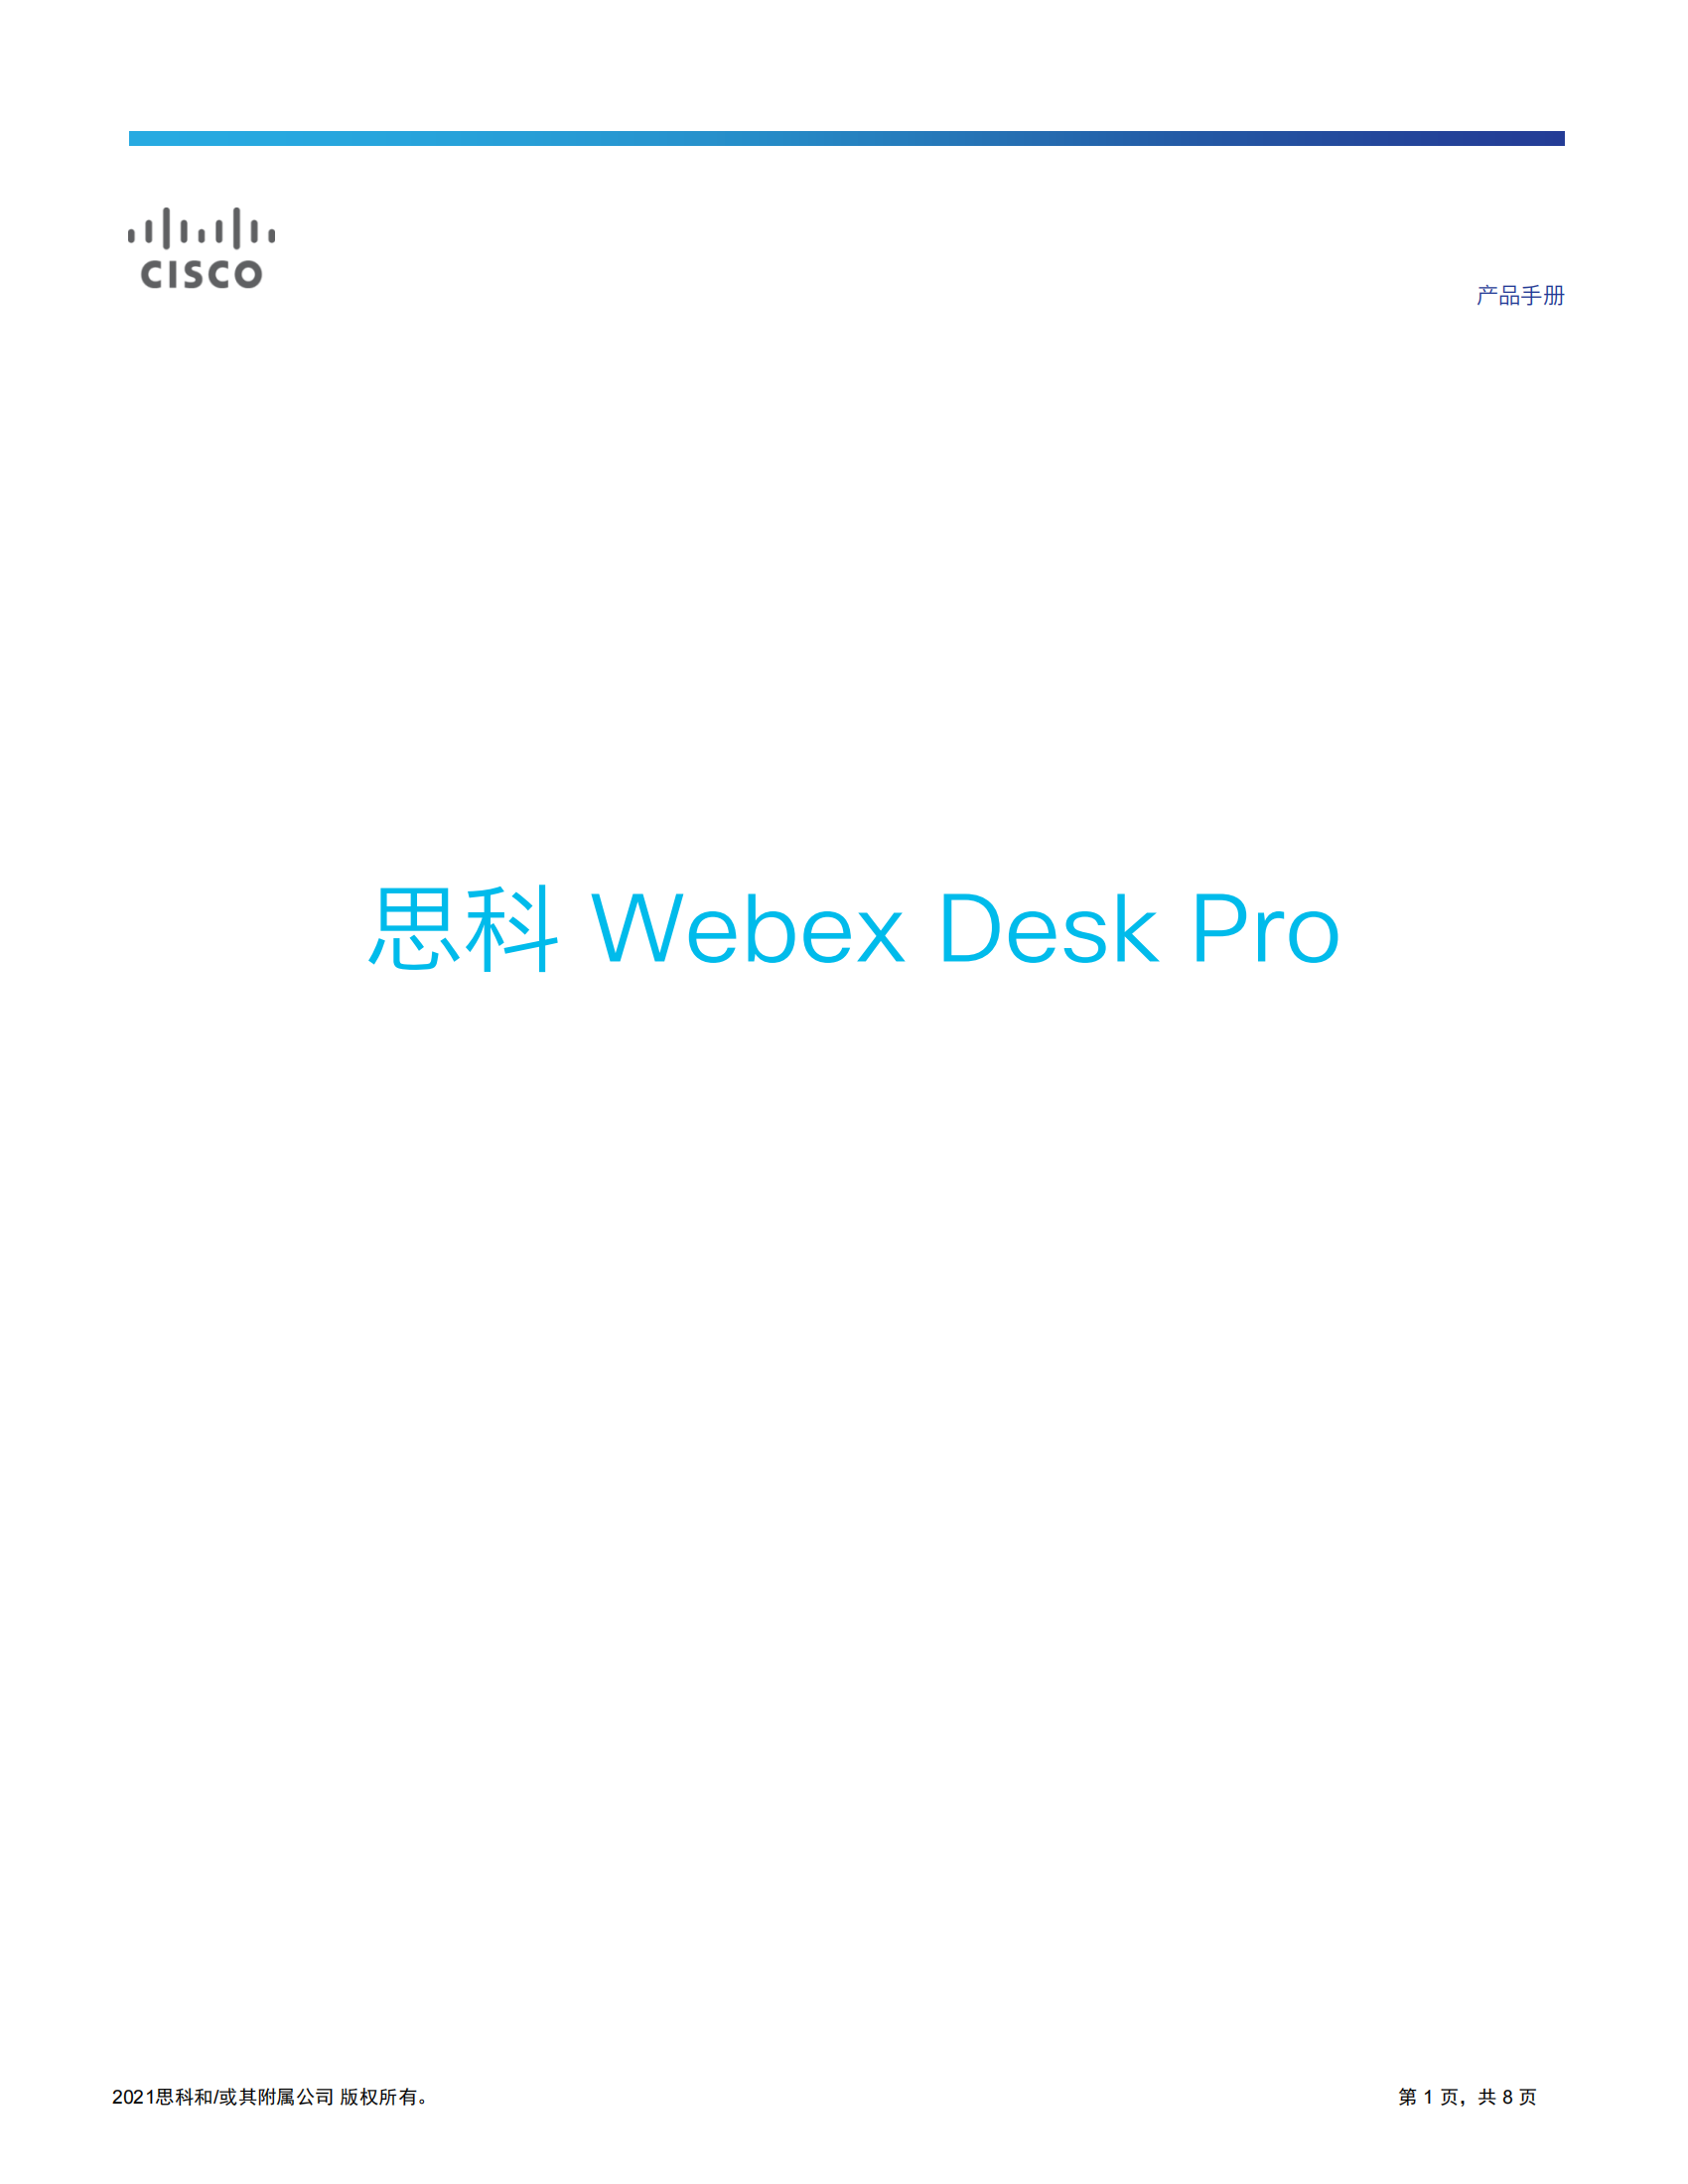 cisco-webex-desk-pro-data-sheet_00.png